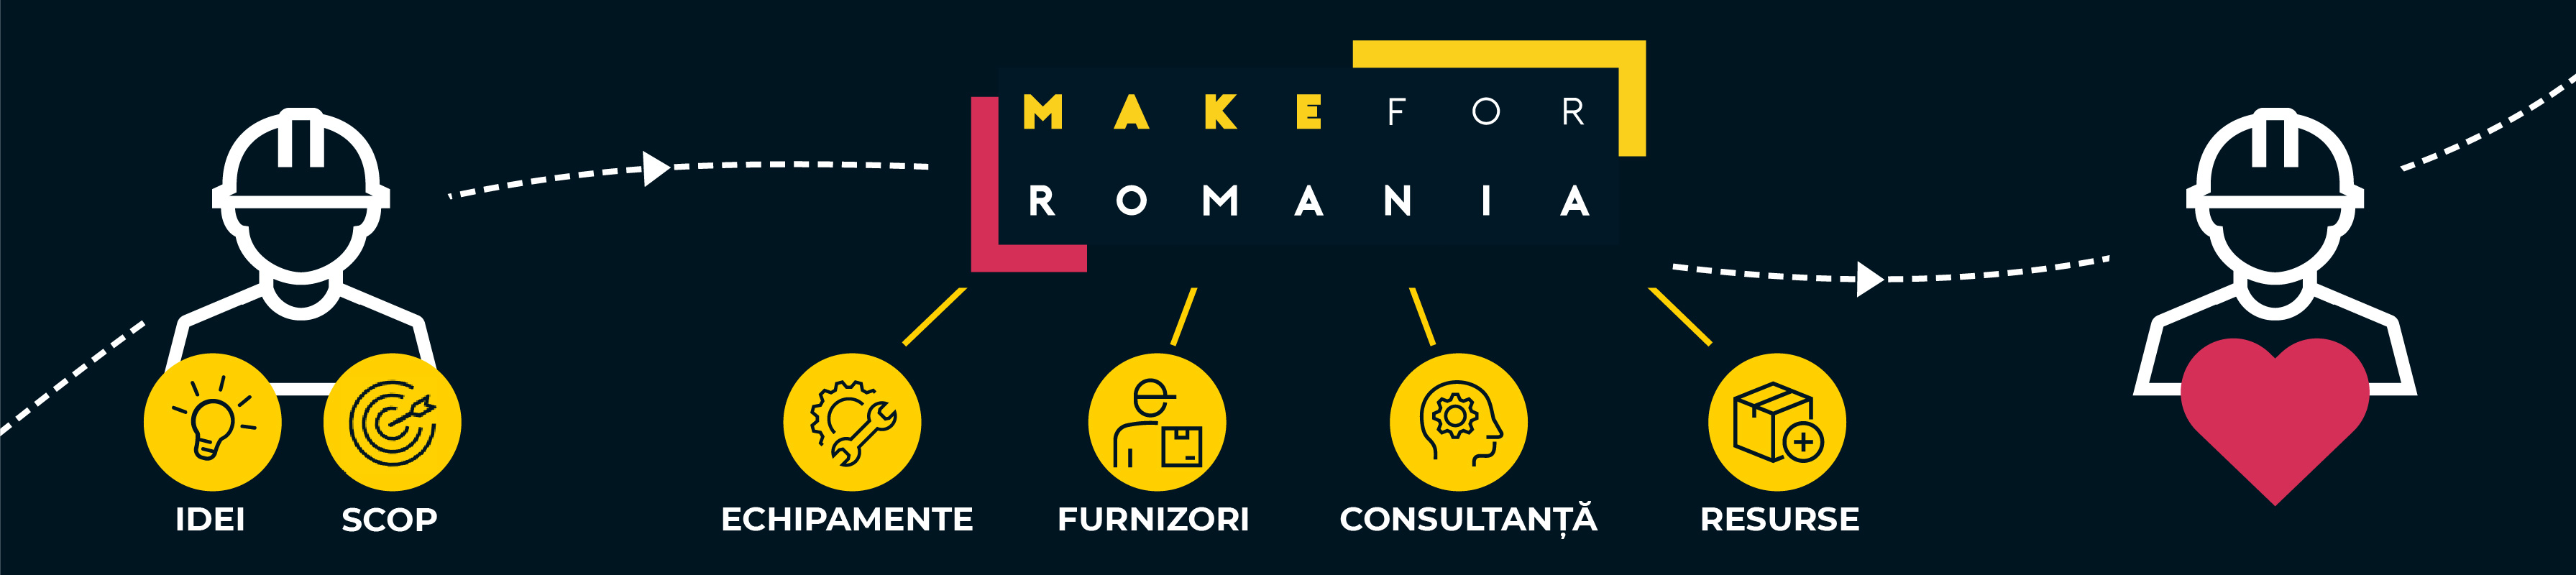 Make 4 Romania - NOD